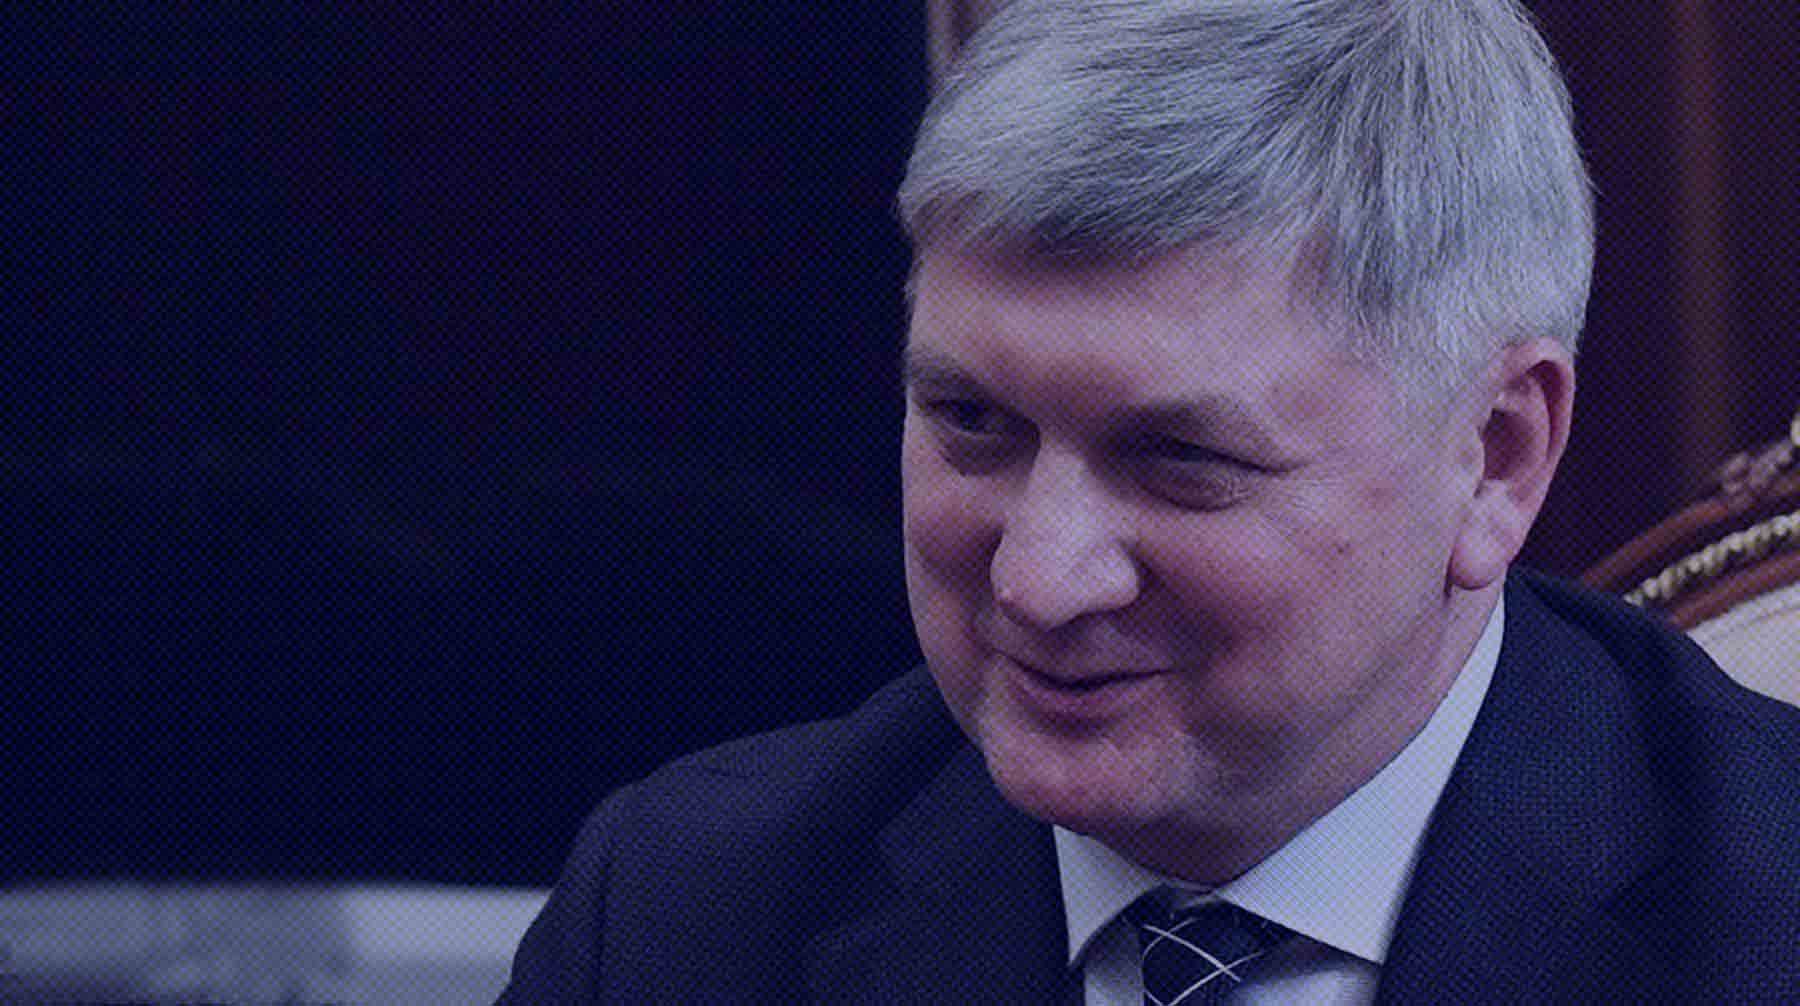 Dailystorm - Найдем и наградим: губернатор отблагодарит жителя Воронежа за спасение раненных при взрыве автобуса